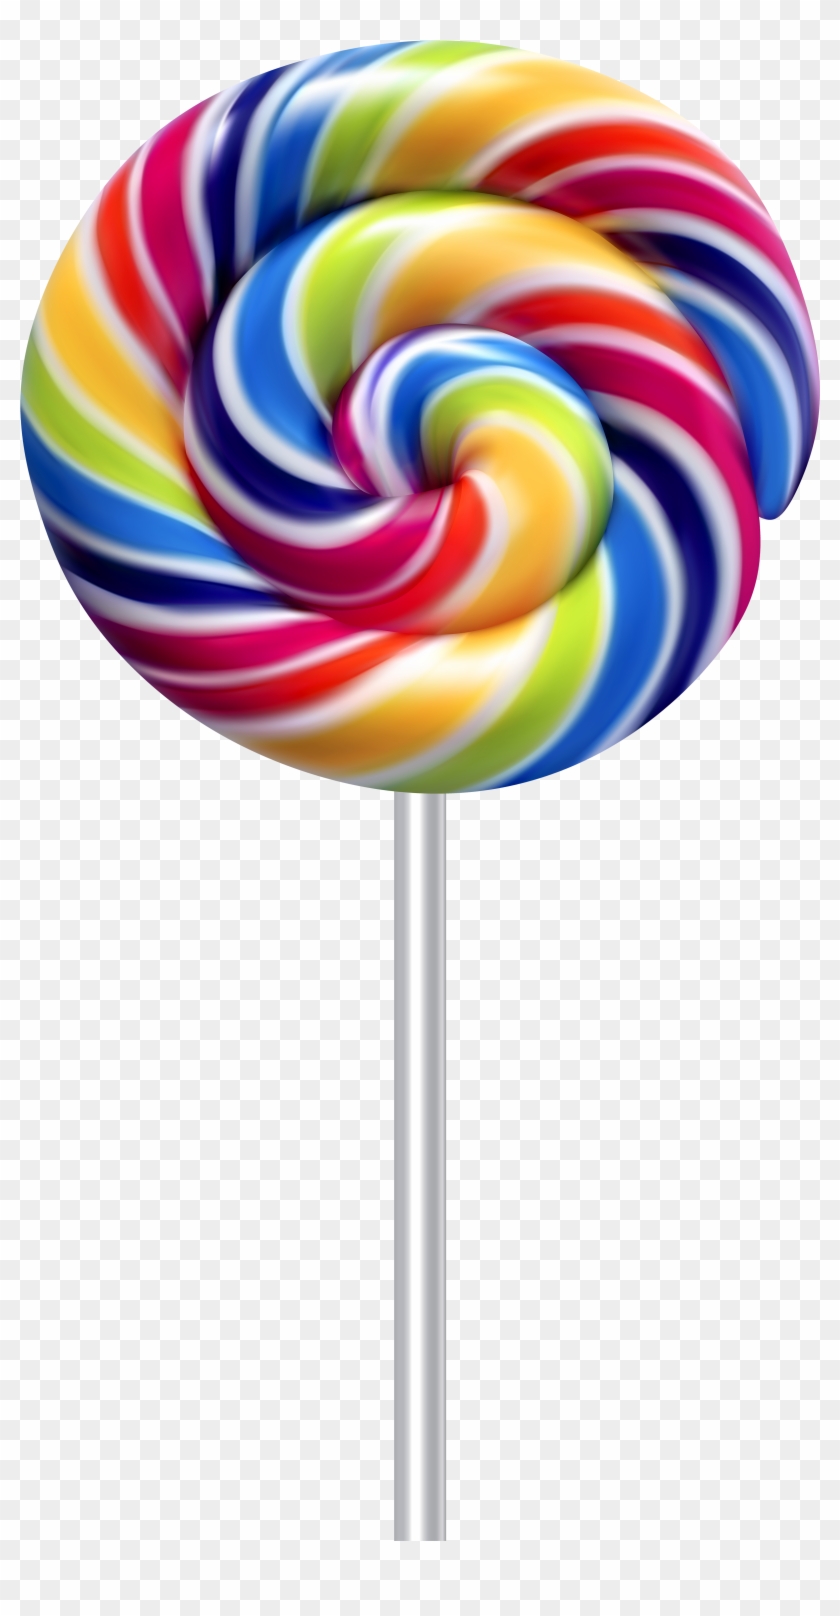 Lollipop Stick Candy Clip Art - Lollipop Transparent #108010